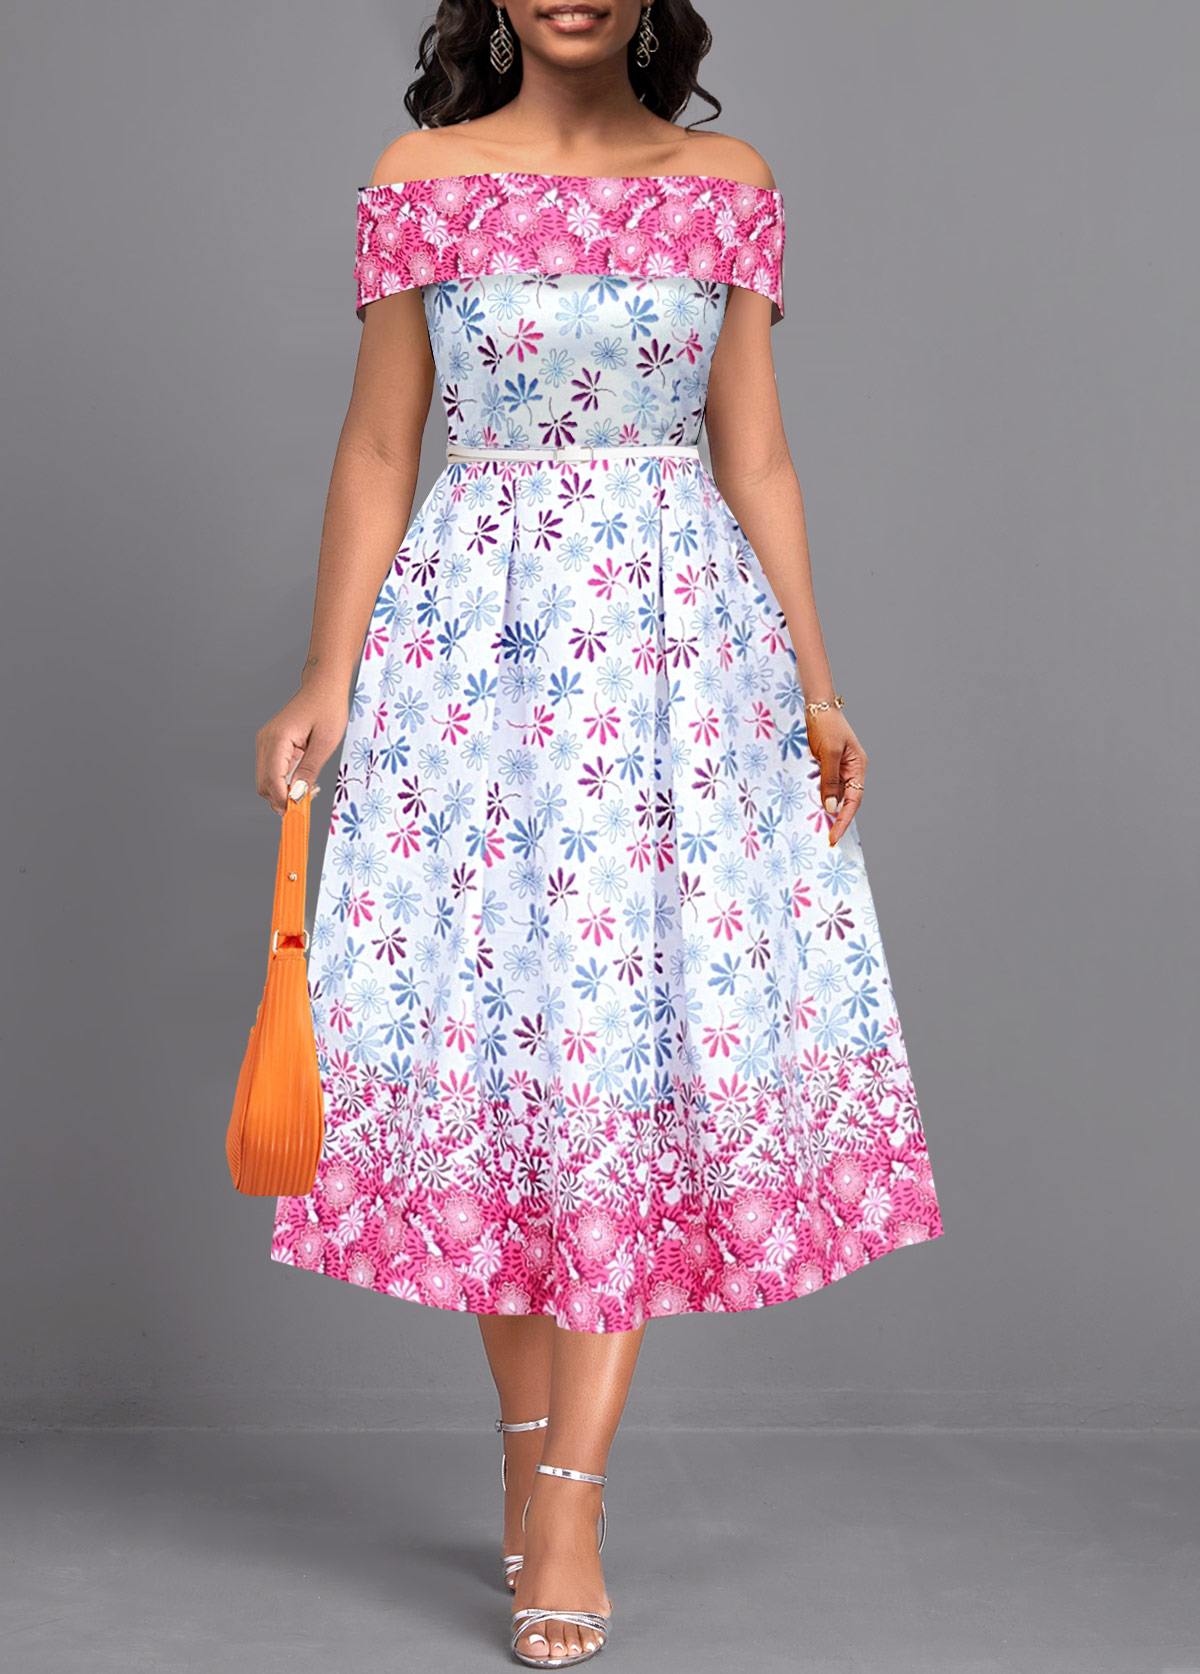 ROTITA Patchwork Ditsy Floral Print Multi Color Off Shoulder Dress